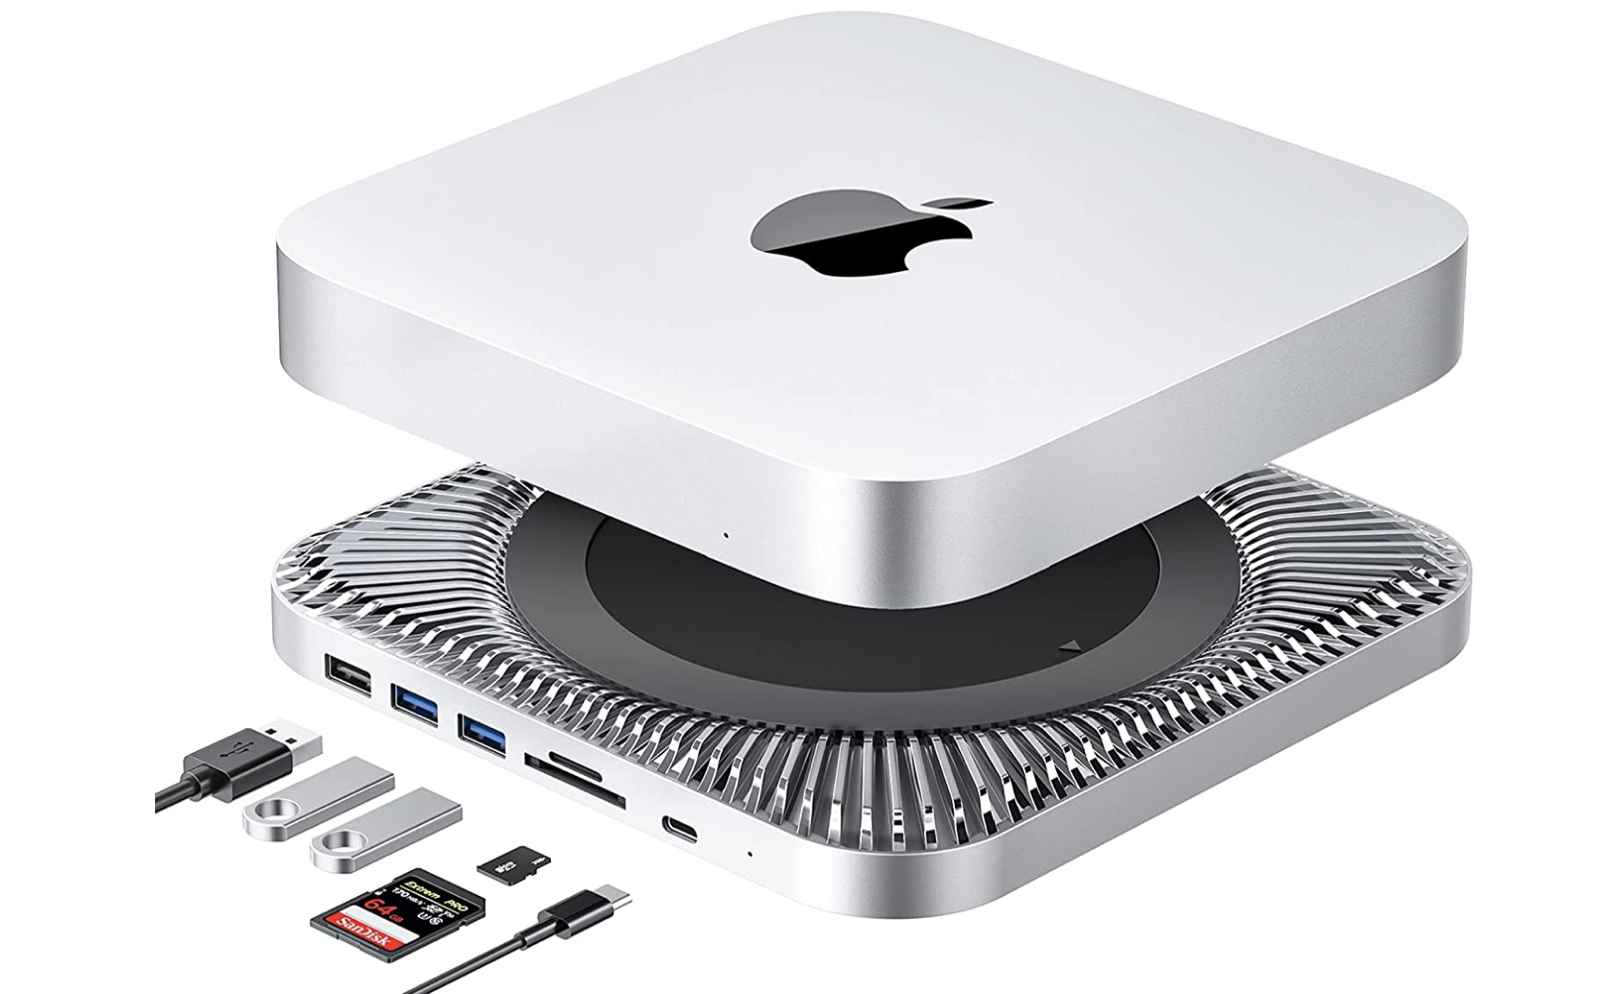 Hub per Mac Mini con alloggiamento HD, in sconto a 76€